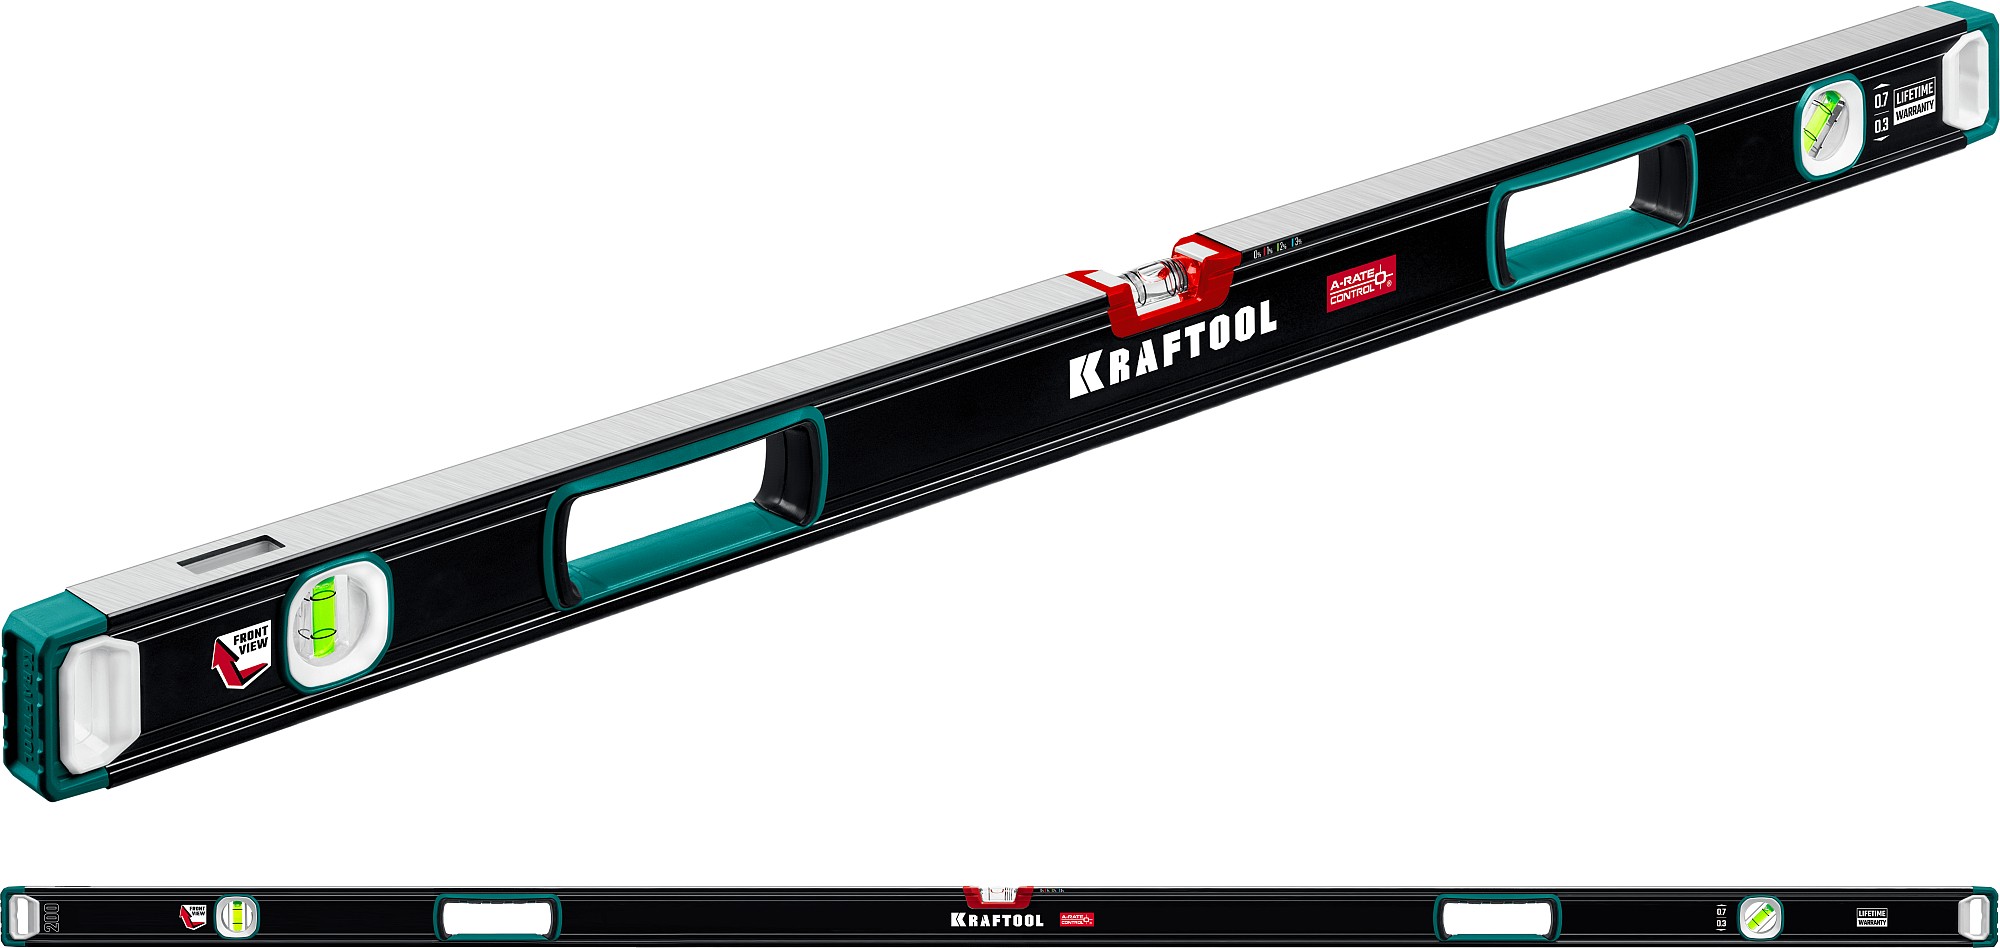 KRAFTOOL A-RATE CONTROL, 2000 мм, точность 0.3 мм/м, с инновационным зеркальным глазком, сверхпрочный уровень (34986-200)